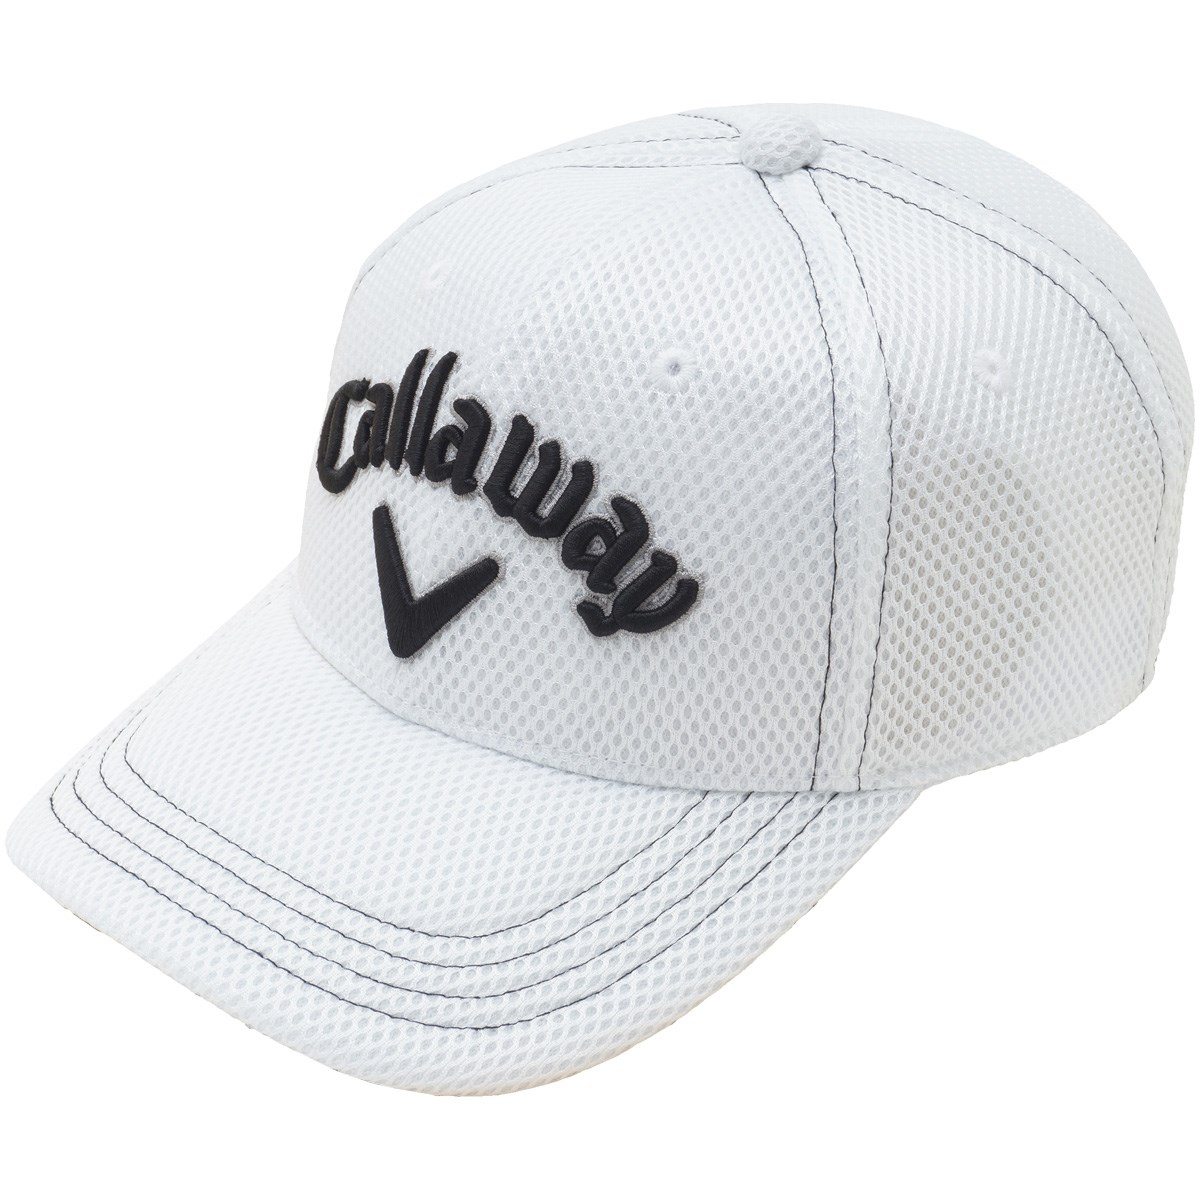 [2018年モデル] キャロウェイゴルフ キャップ ゴルフウェア 帽子の大画像